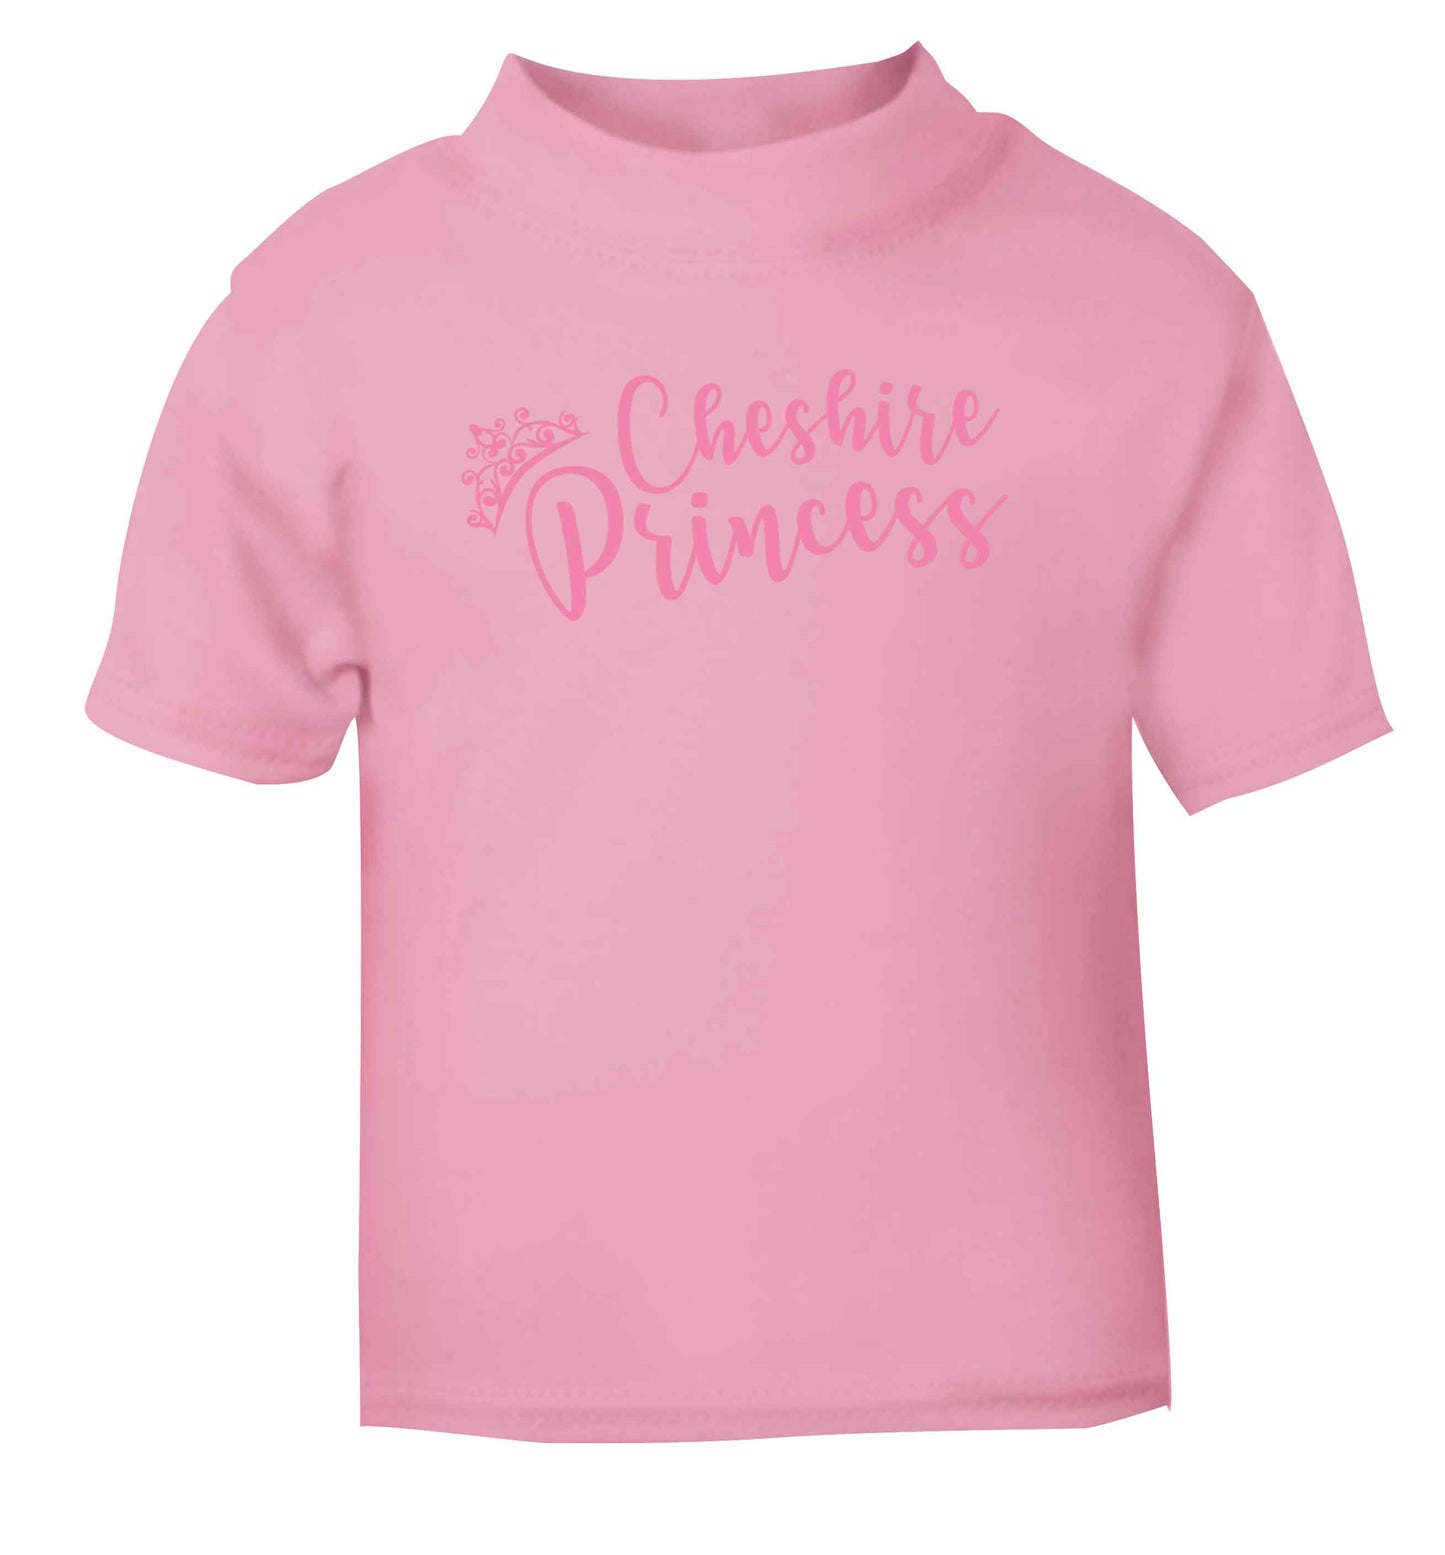 Cheshire princess light pink Baby Toddler Tshirt 2 Years